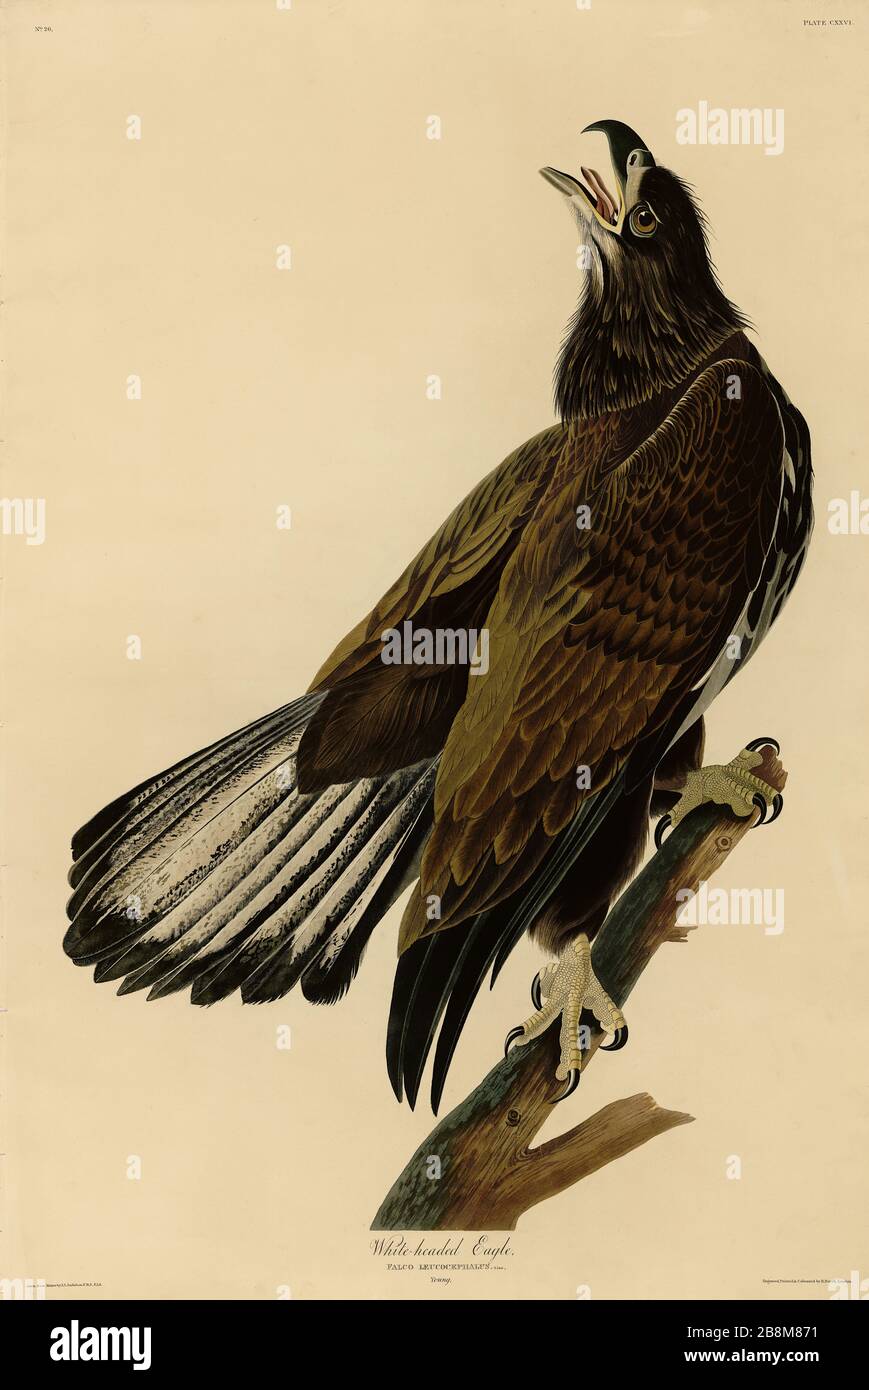 Platte 126 White-headed Eagle, Young, from the Birds of America Folio (1826-322) von John James Audubon - sehr hochauflösendes und qualitativ hochwertiges bearbeitetes Bild Stockfoto